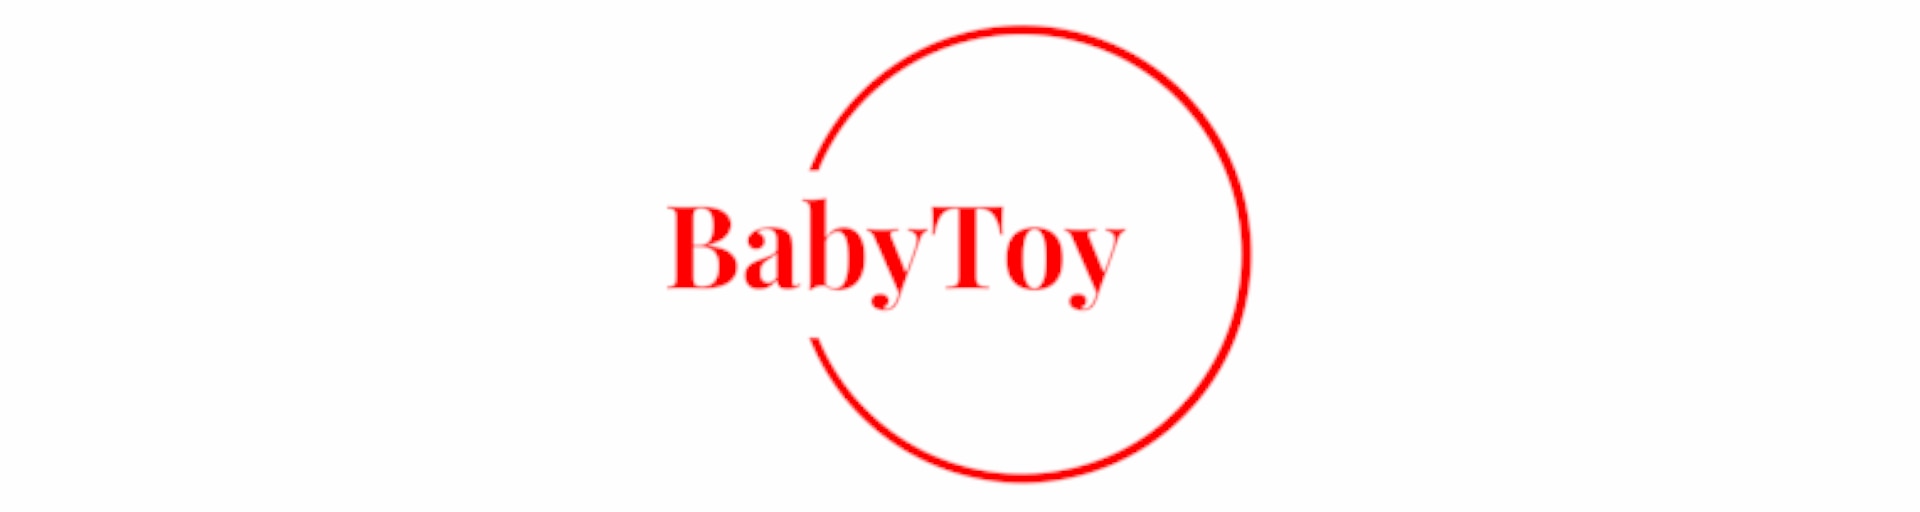 BabyToy